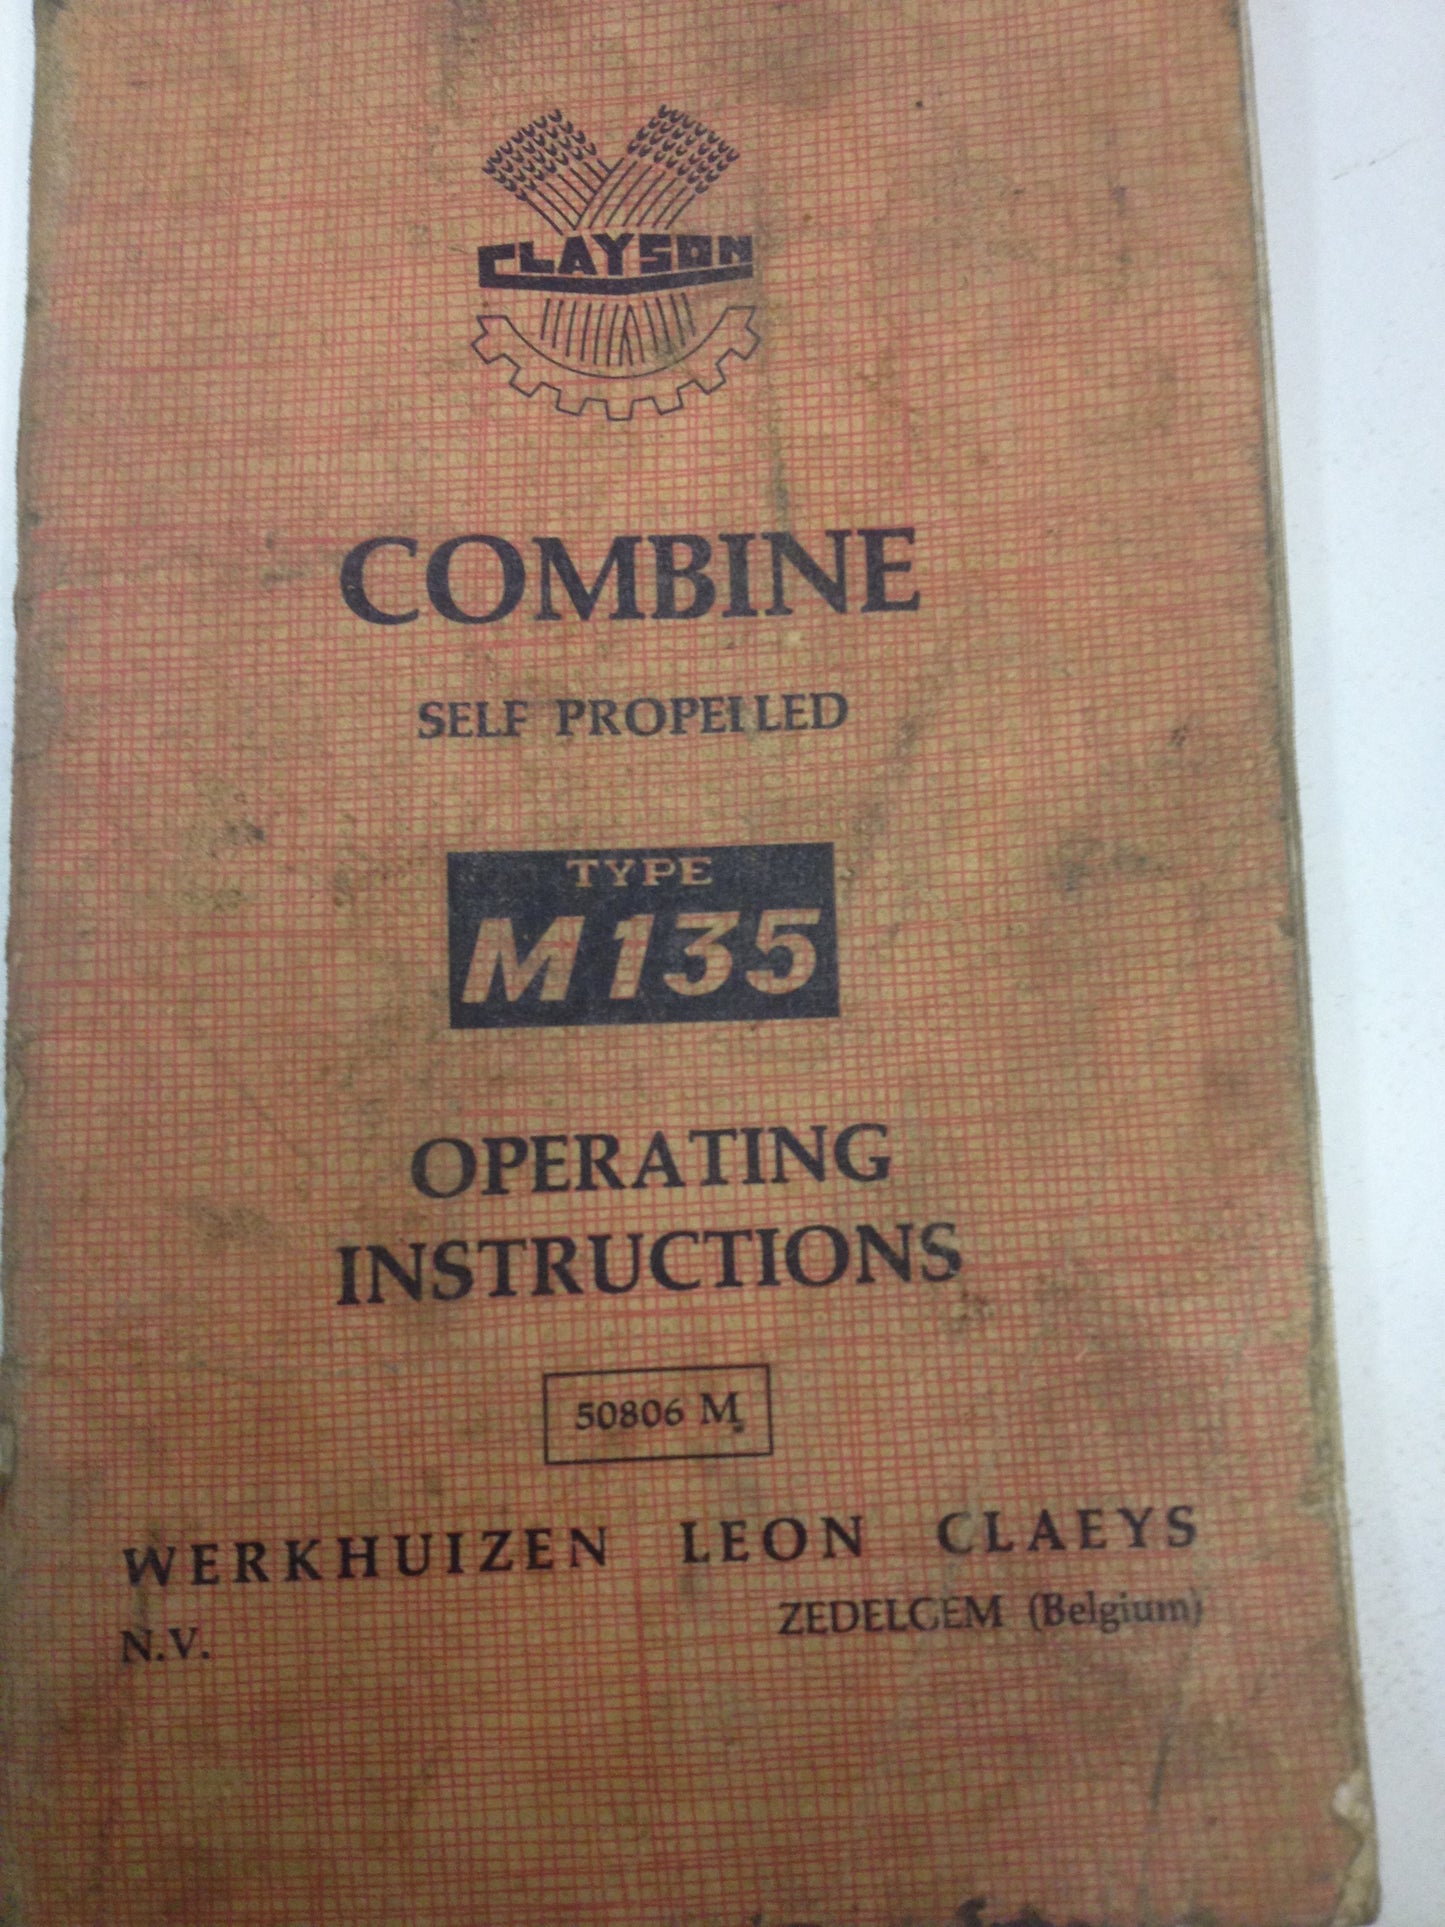 Clayson Combine Manual M135 Vintage